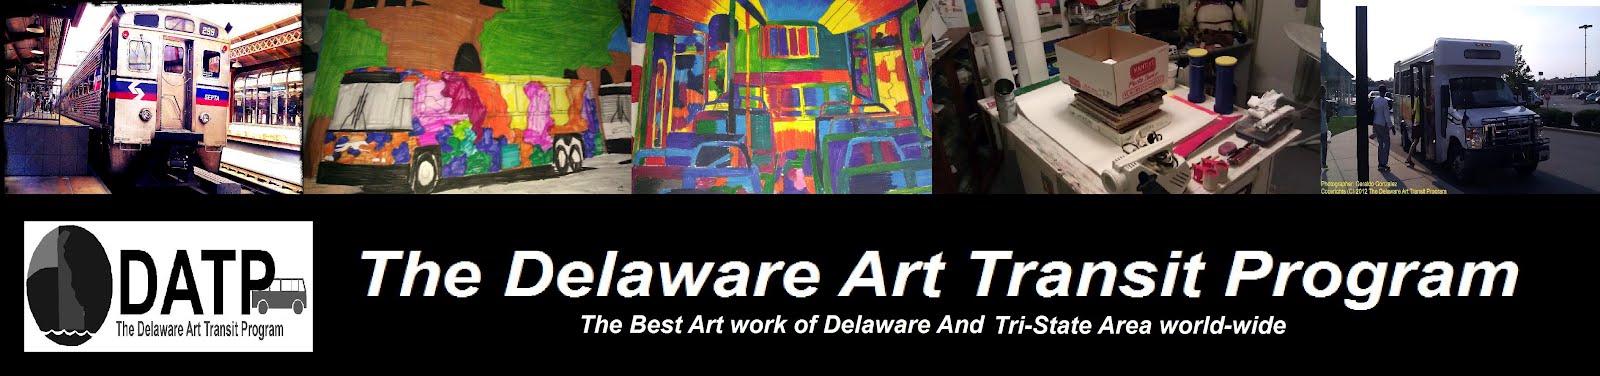 The Delaware Art Transit Program